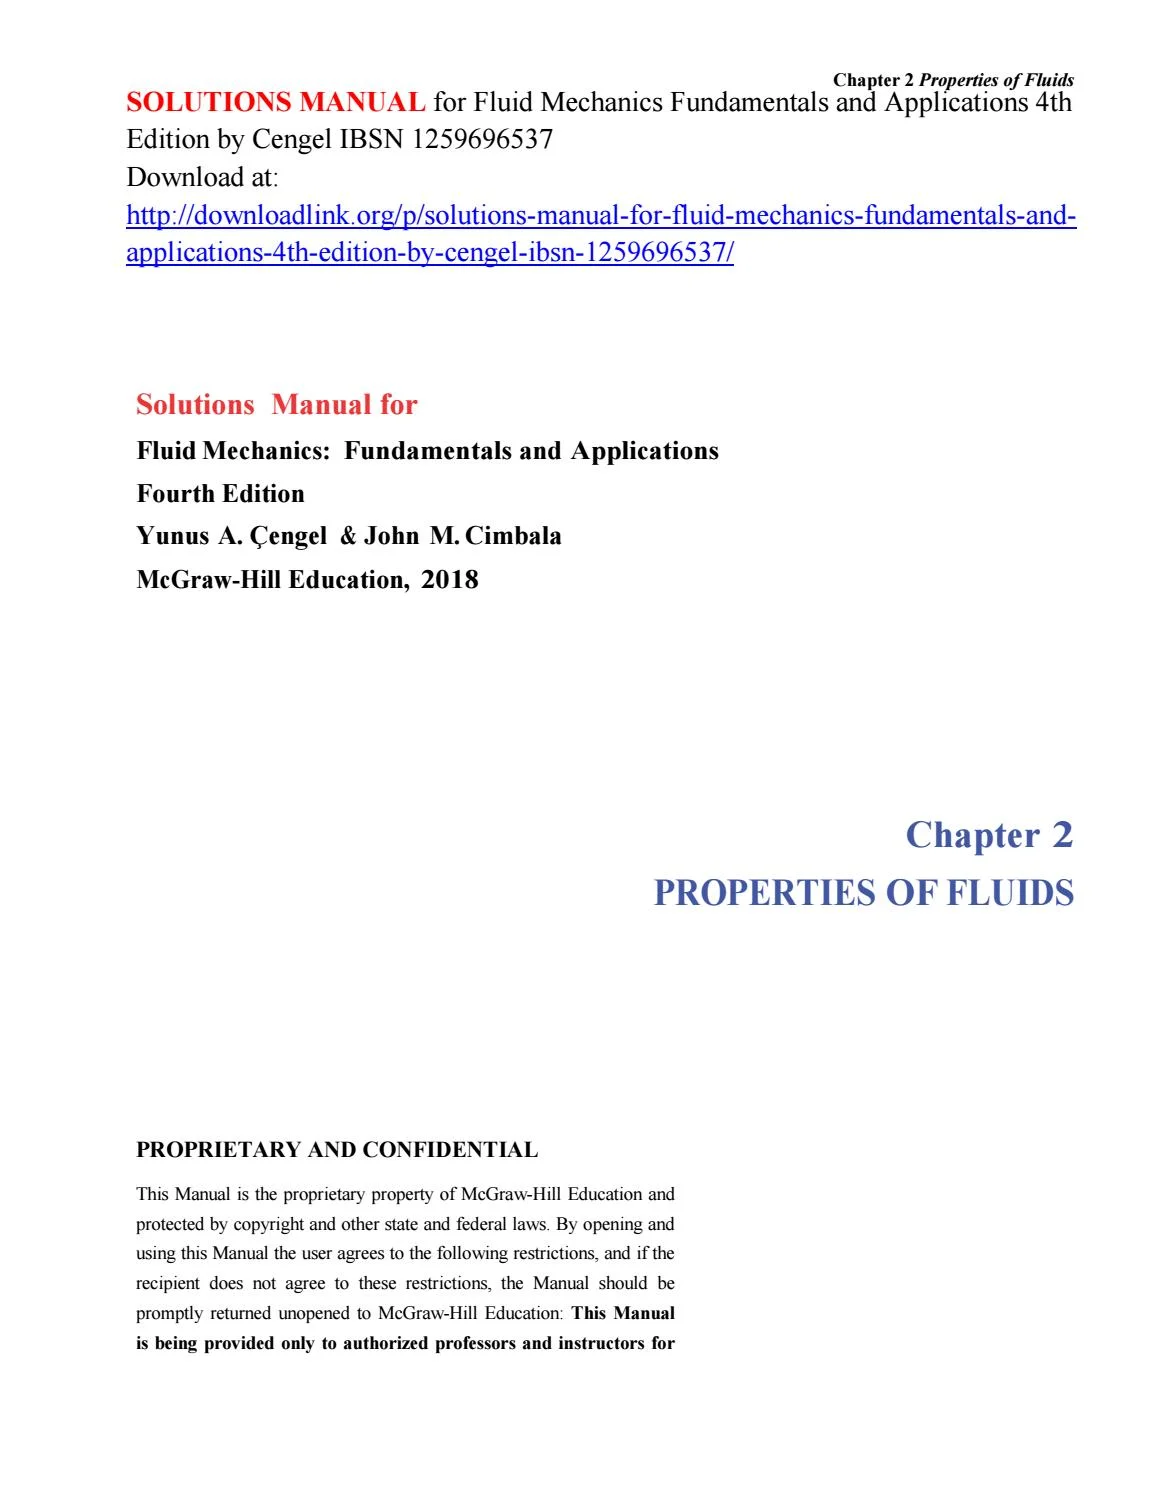 fluid mechanics fundamentals and applications solutions